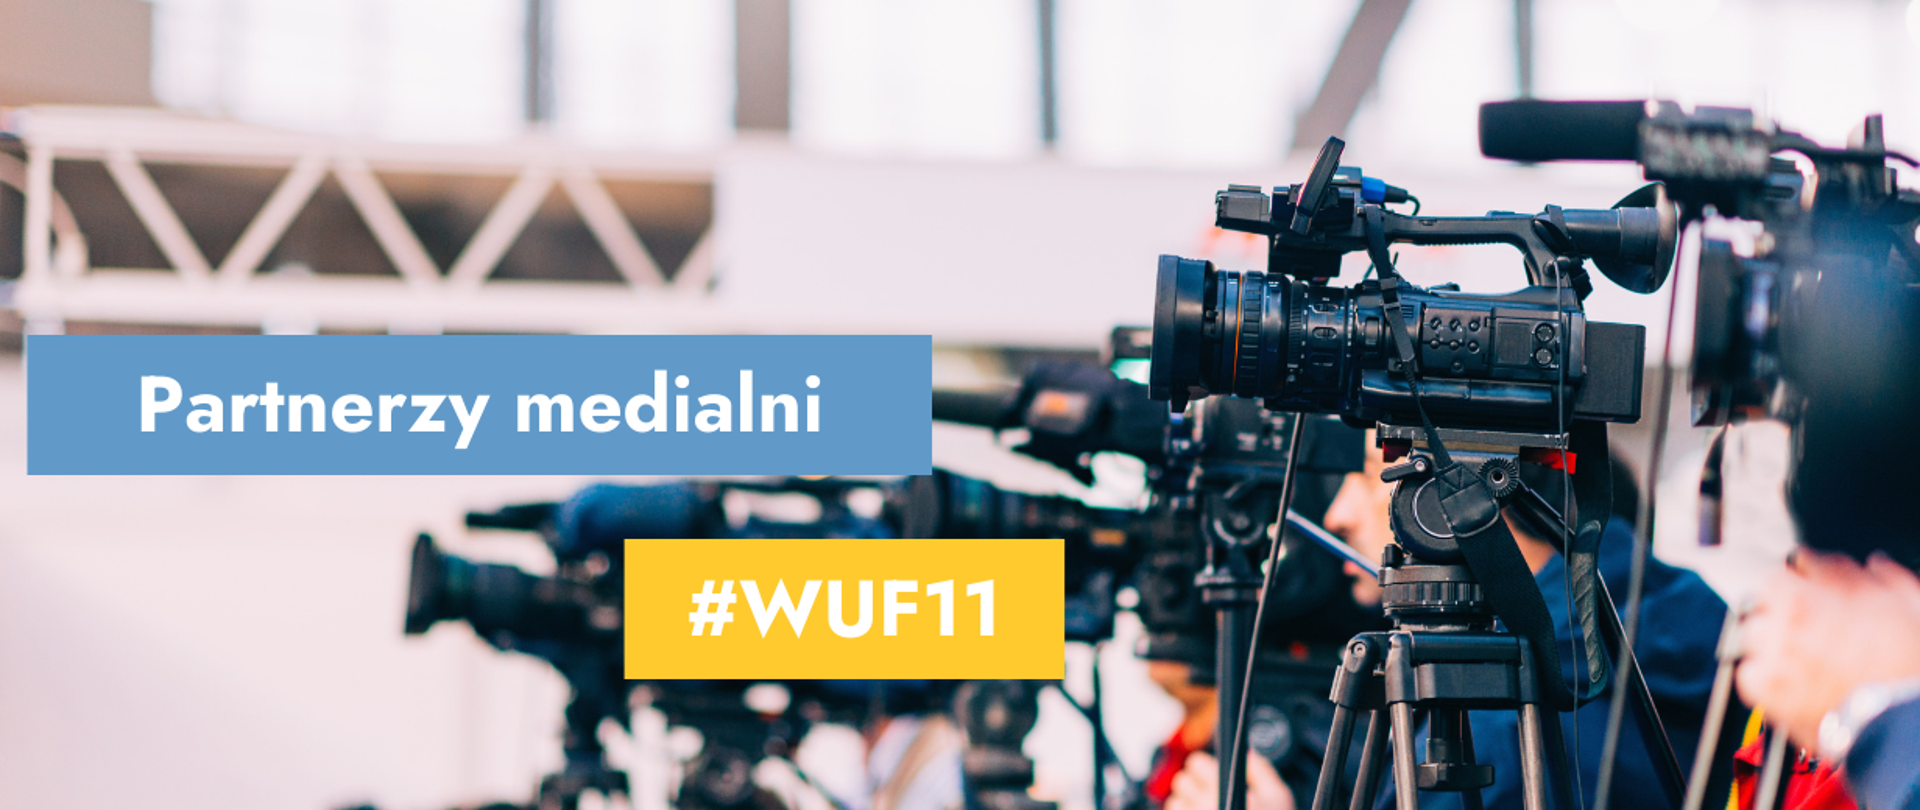 Na grafice zdjęcie kamer i tekst: Partnerzy medialni #WUF11.